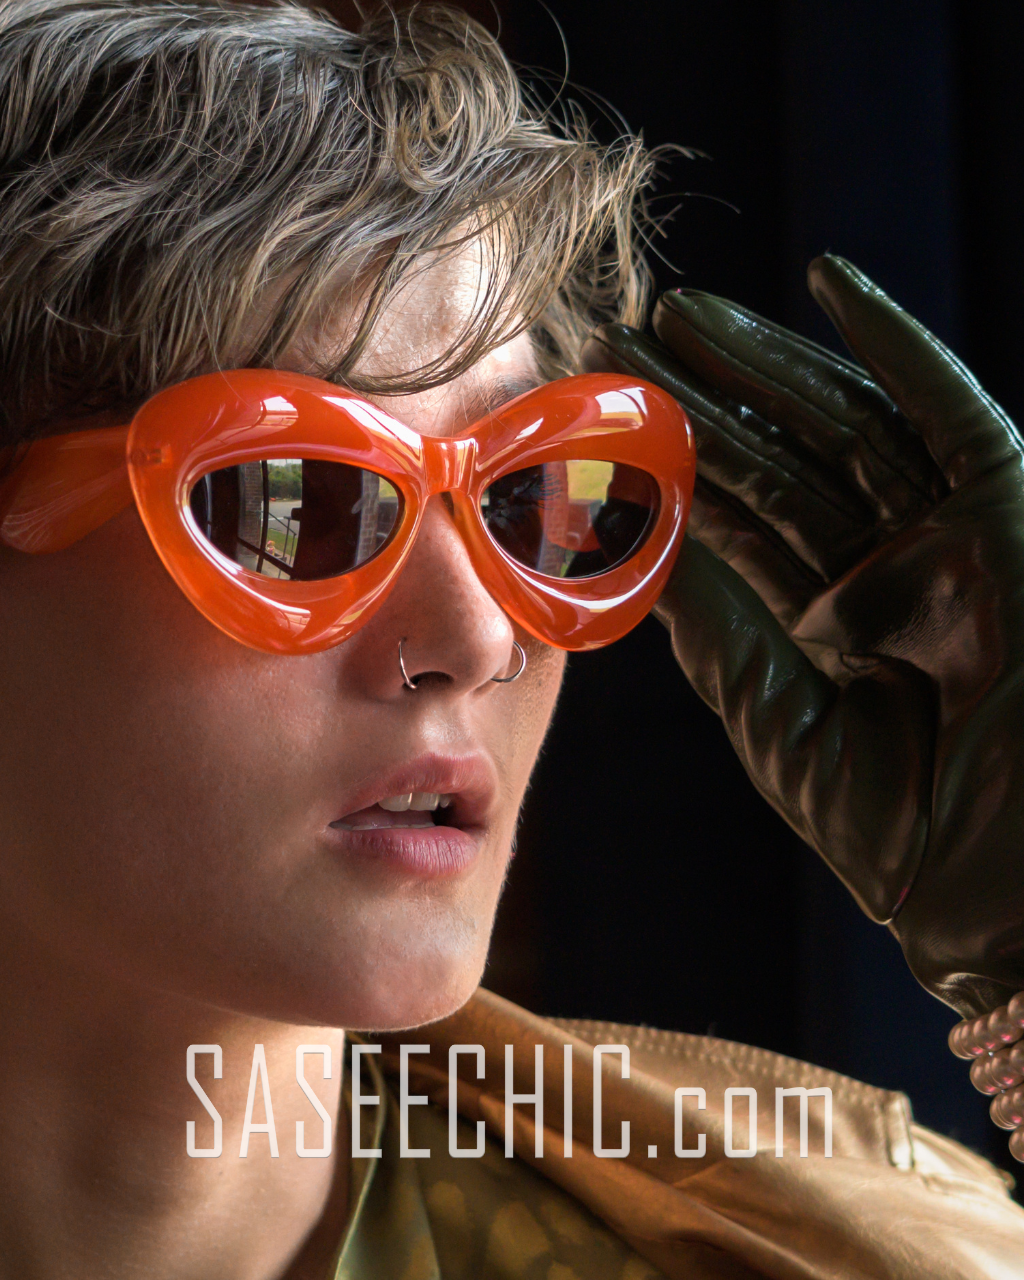 'True' Oval Sunglasses (Orange)